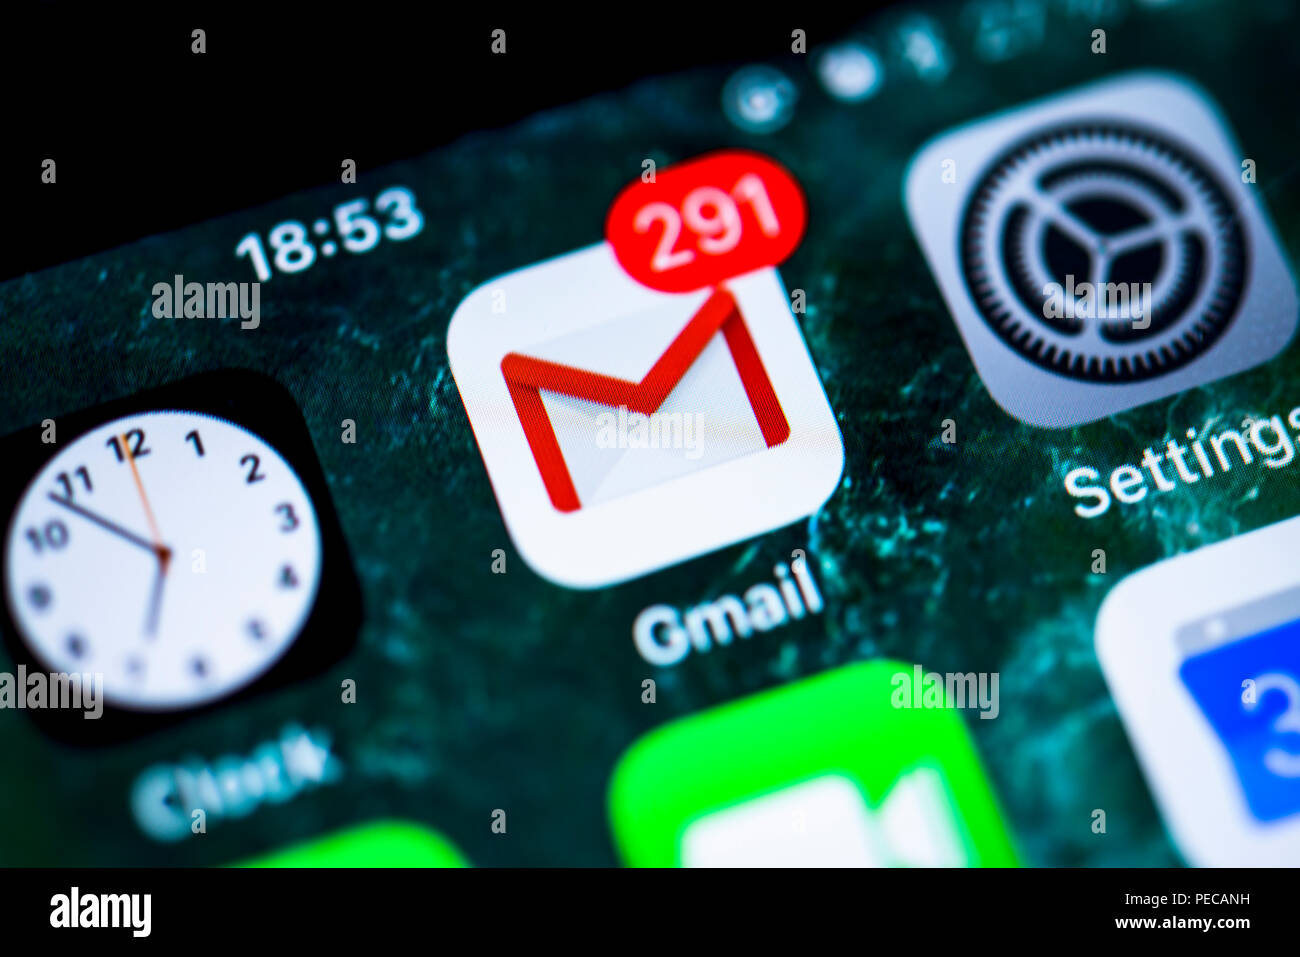 Google Gmail, service de messagerie, icône de l'application sur l'iPhone, iOS, l'écran du smartphone, écran, close-up, détail, Allemagne Banque D'Images